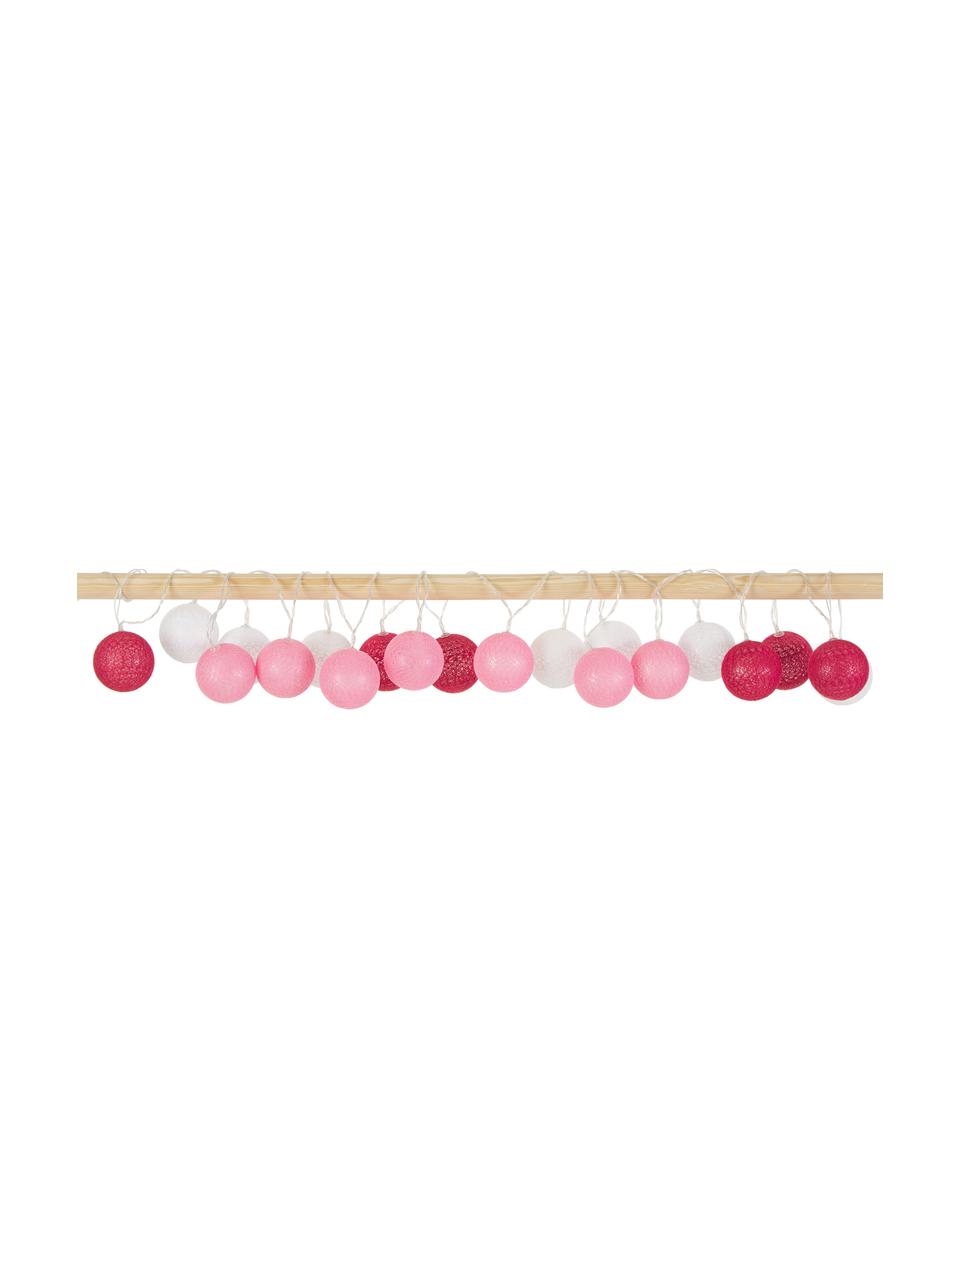 Girlanda świetlna LED Bellin, dł. 320 cm i 20 lampionów, Różowy, ciemny czerwony, biały, D 320 cm